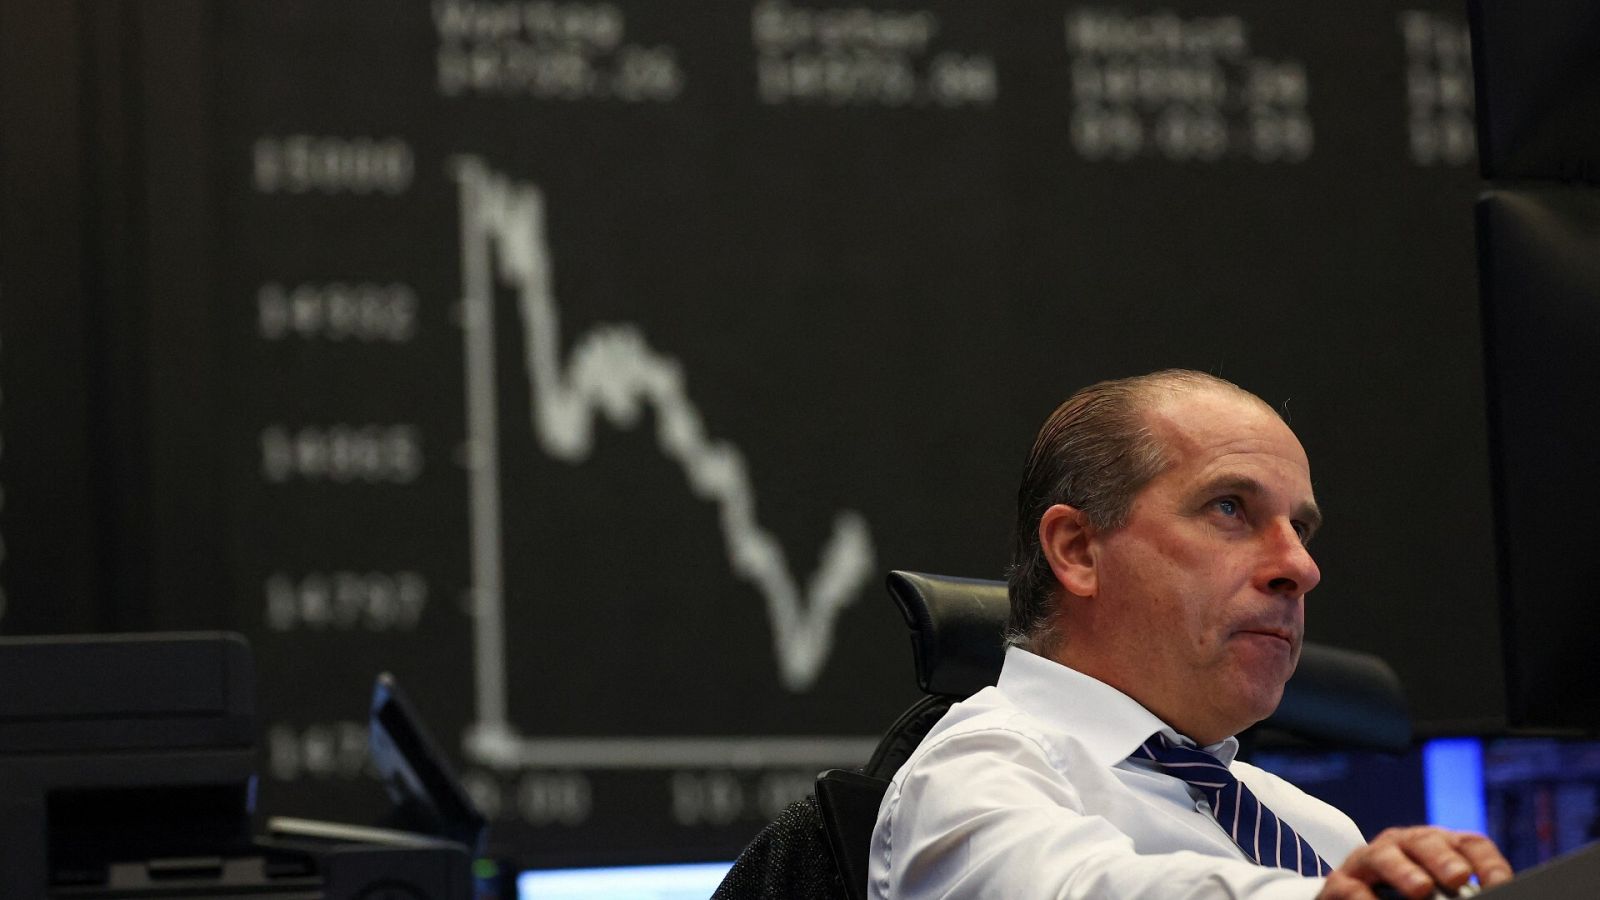 Un hombre trabaja en la Bolsa de Fráncfort frente a un ordenador y, de fondo, un gráfico refleja las caídas de los valores del DAX